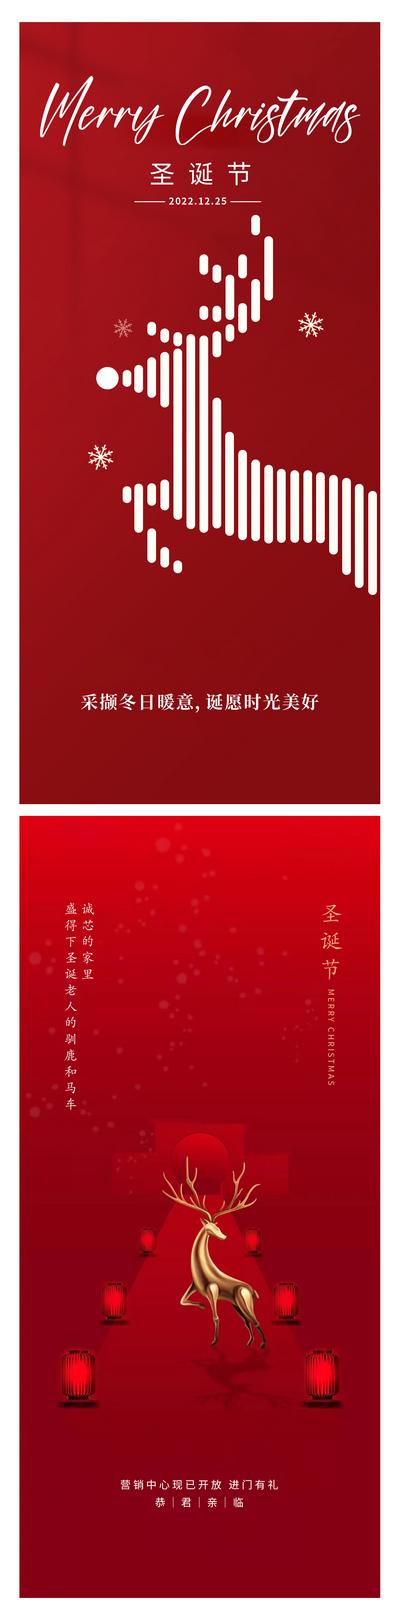 南门网 广告 海报 节日 圣诞节 圣诞树 鹿 简洁 红色喜庆